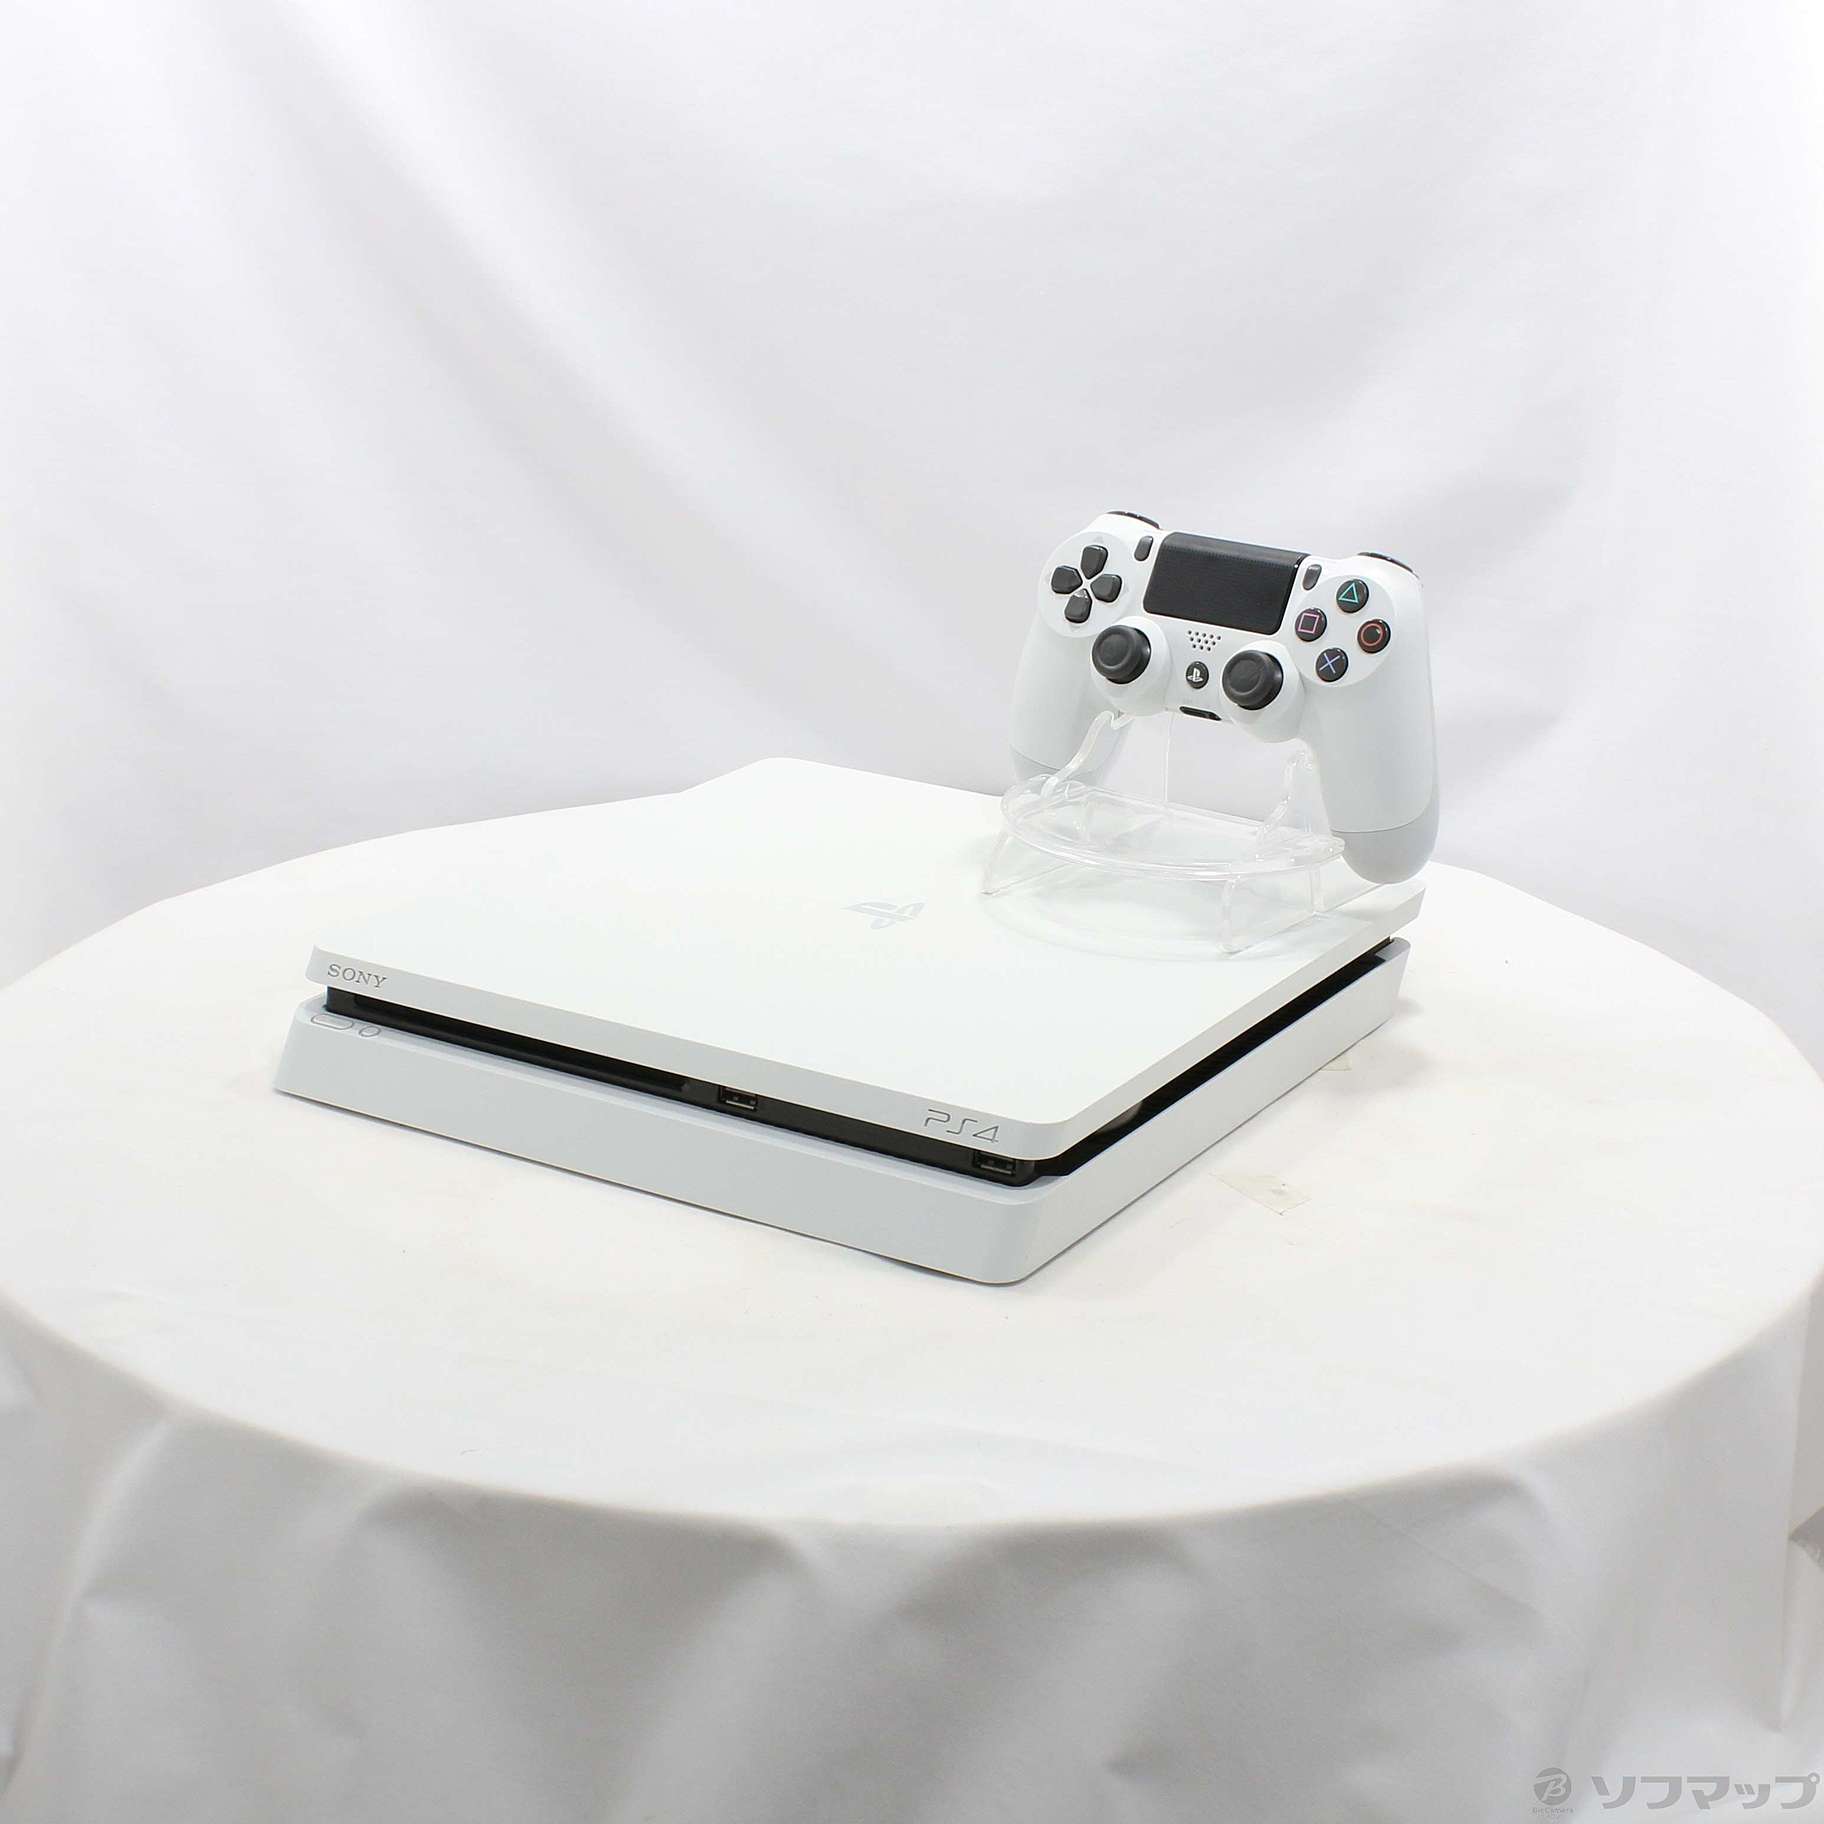 中古品〕 PlayStation 4 グレイシャー・ホワイト 1TB｜の通販はアキバ